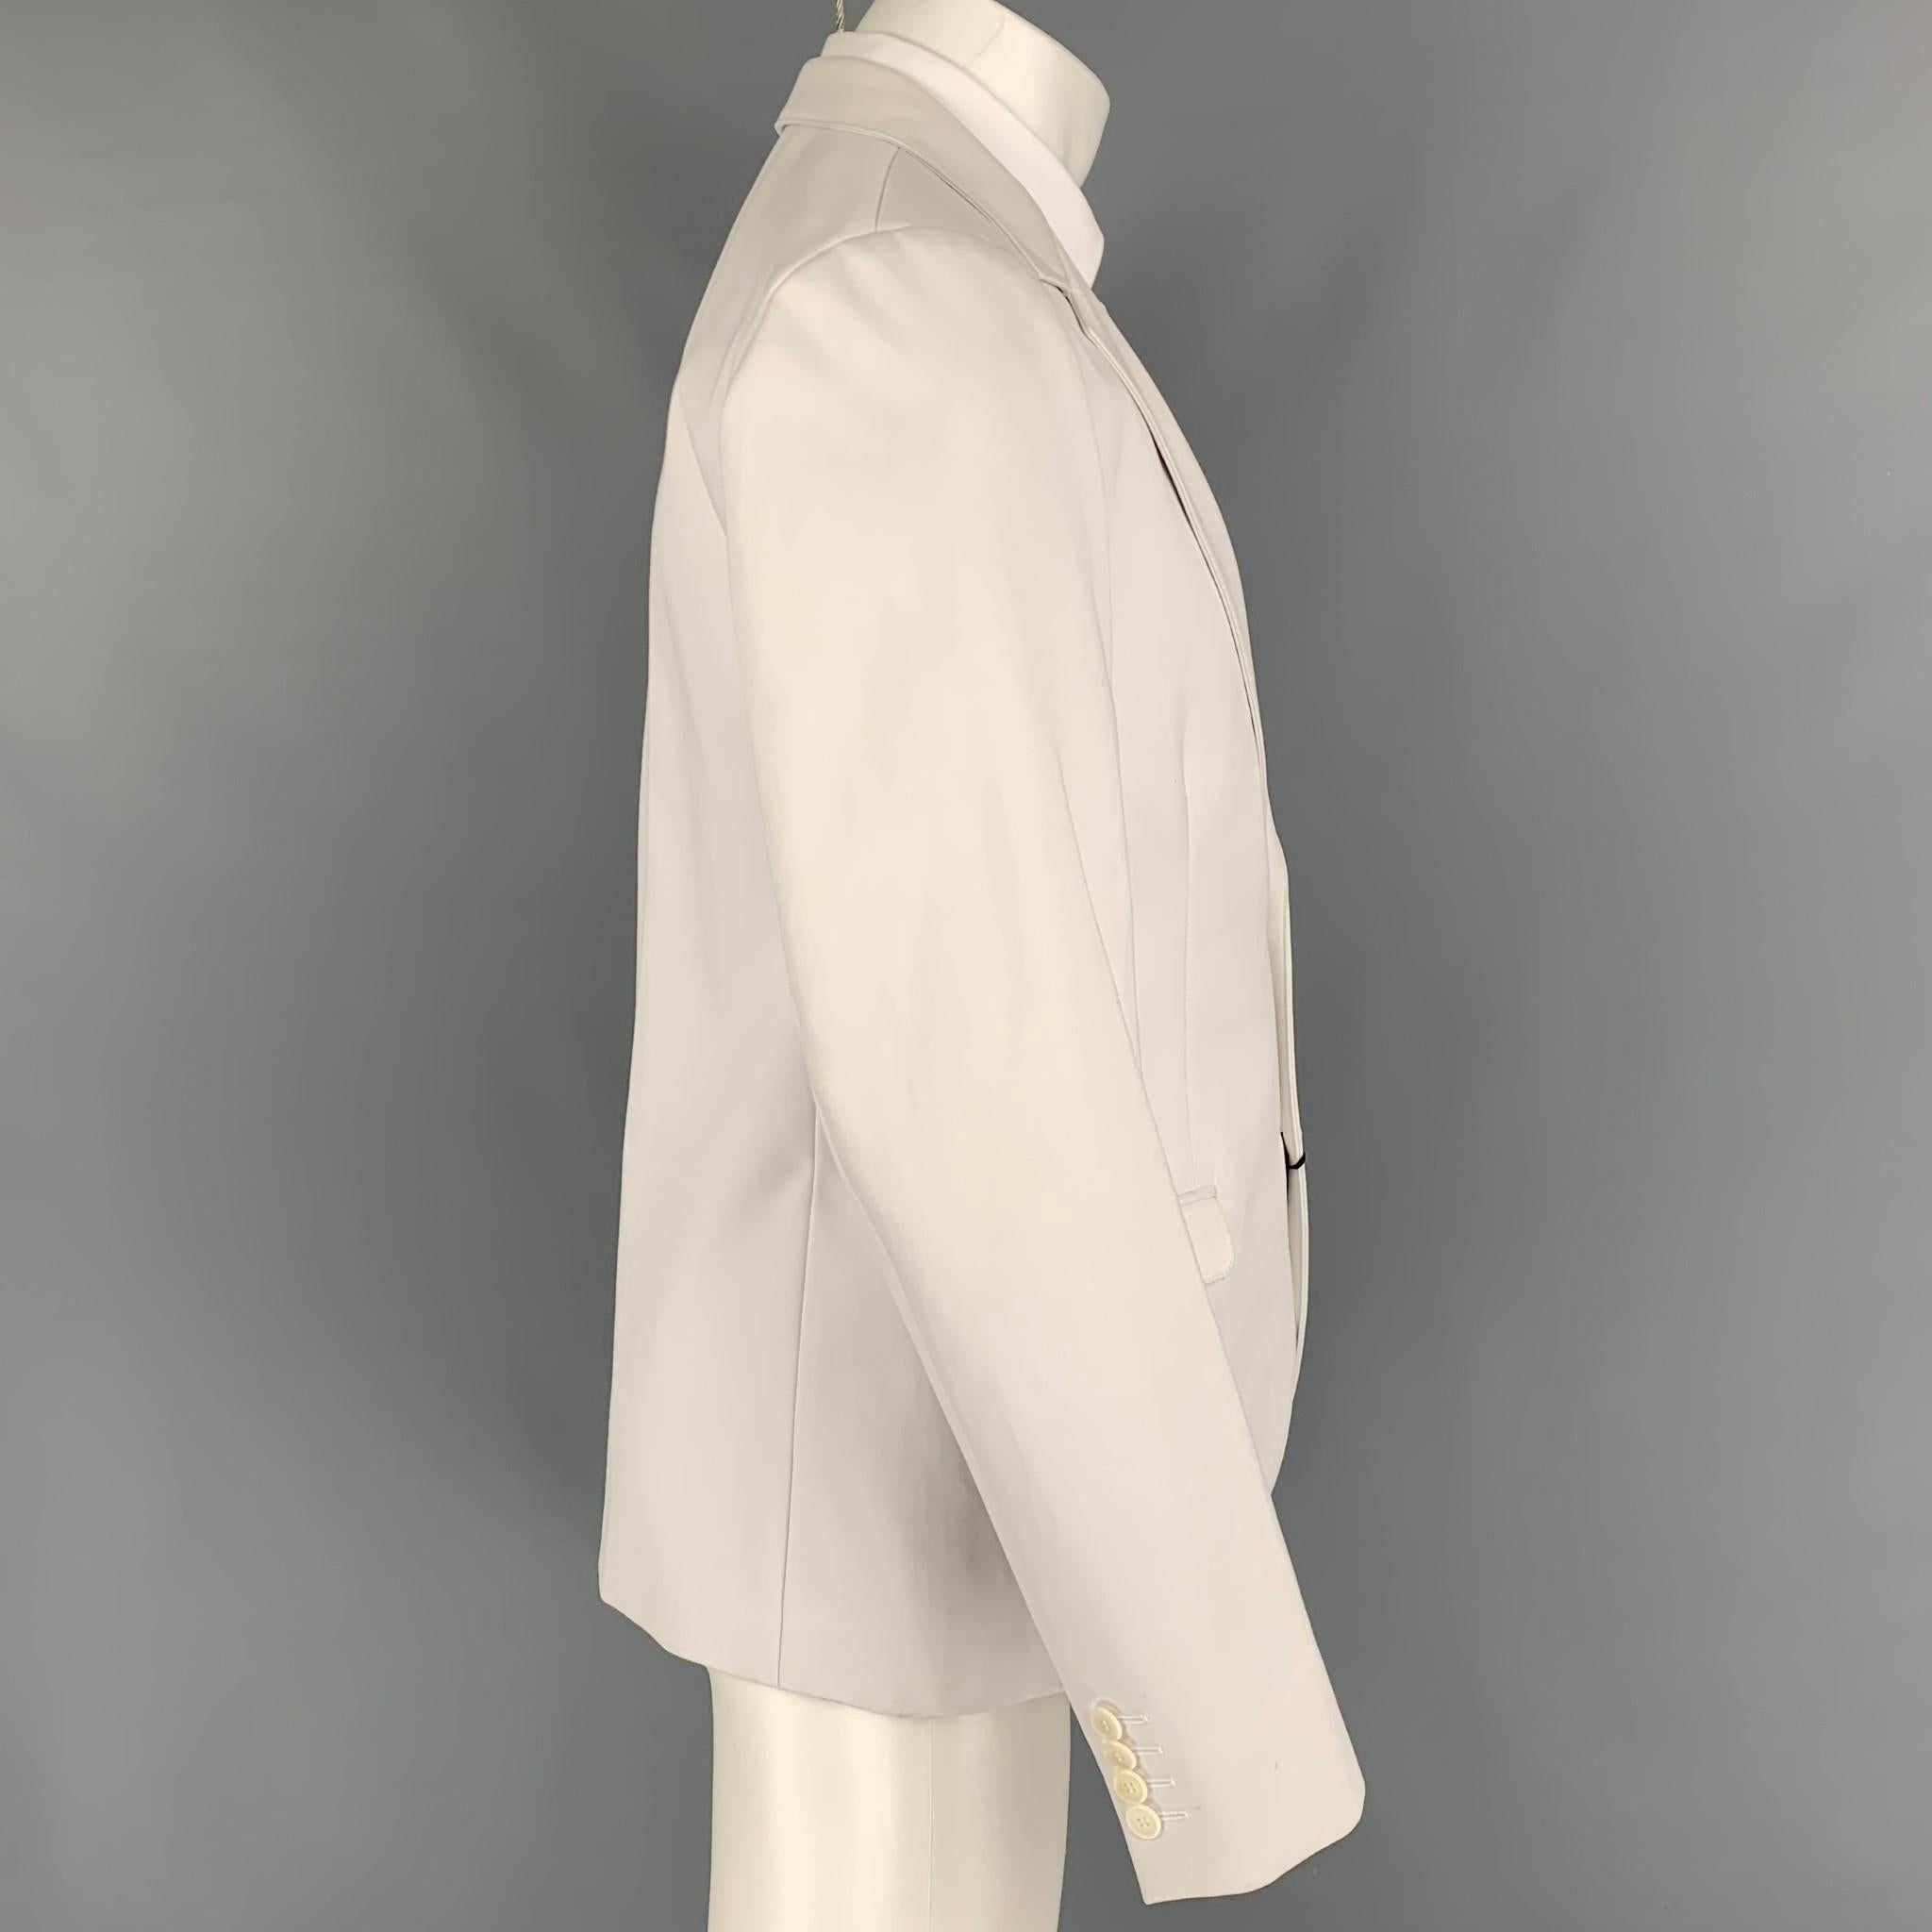 Men's CALVIN KLEIN COLLECTION Size 40 Off White Cotton Notch Lapel Suit